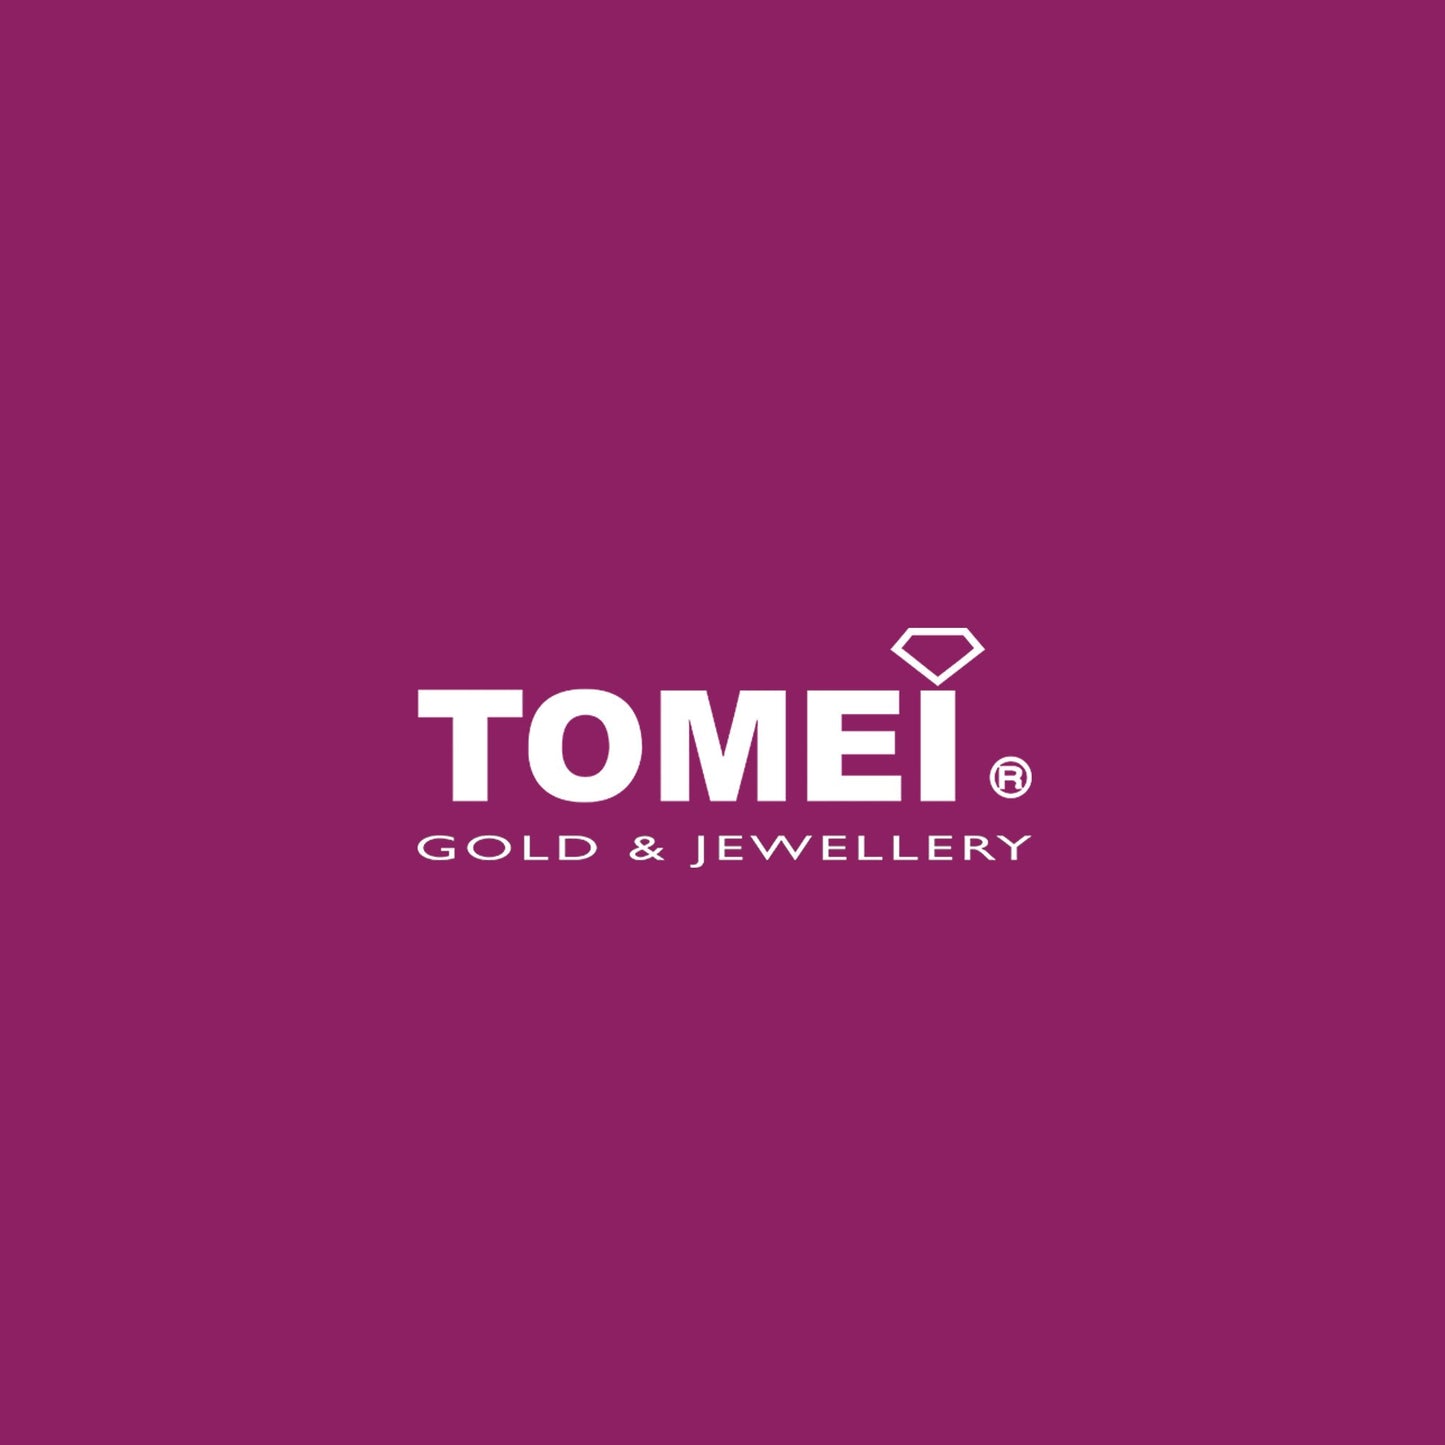 TOMEI 20mm Hoop Diamond Earrings White Gold 750